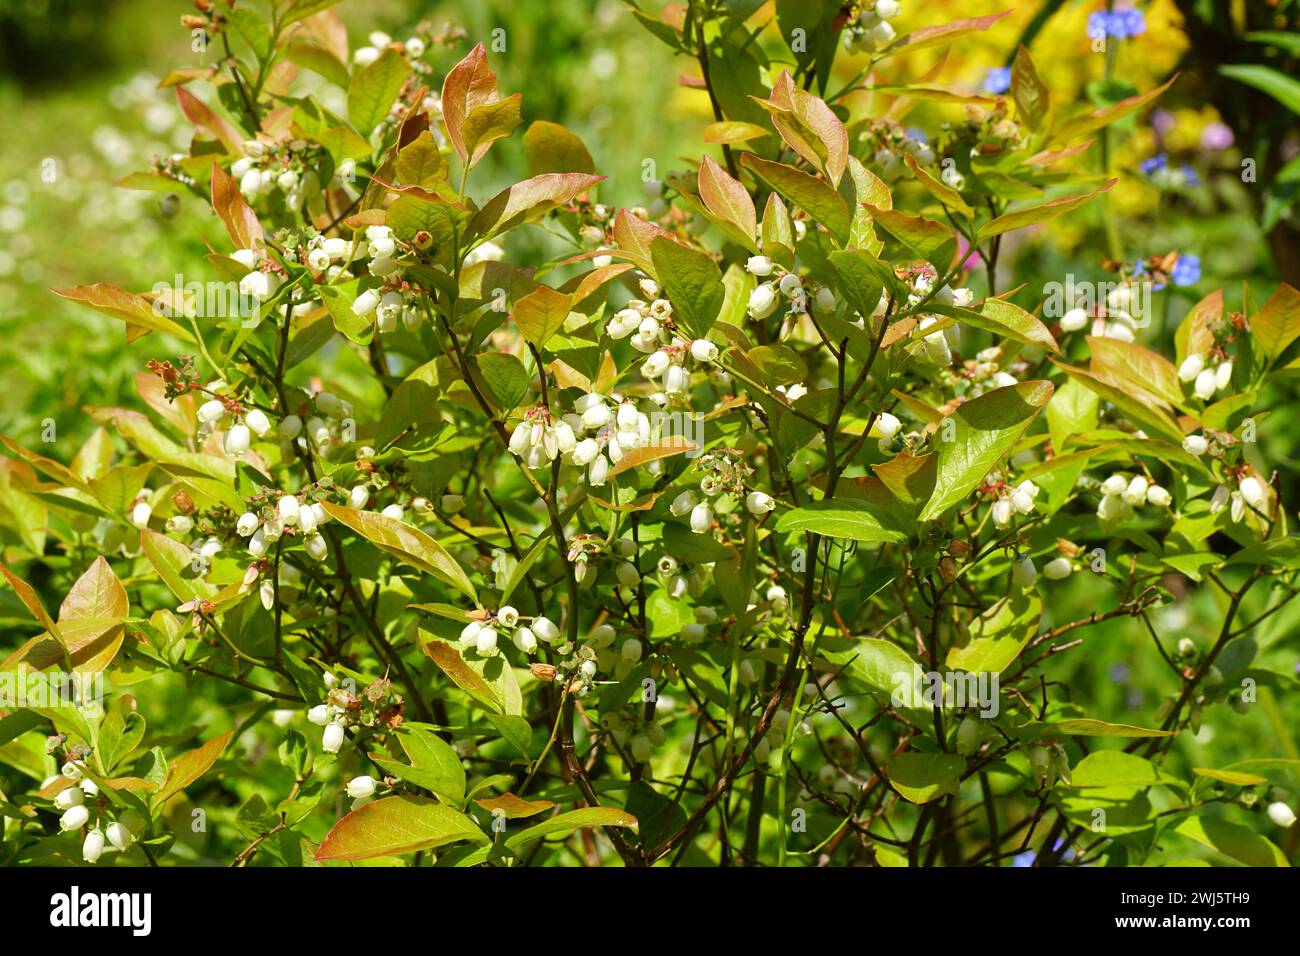 Fleurs blanches longues en forme de cloche ou d'urne du bleuet du nord (Vaccinium corymbosum). Famille des Ericaceae. Printemps, mai, pays-Bas Banque D'Images